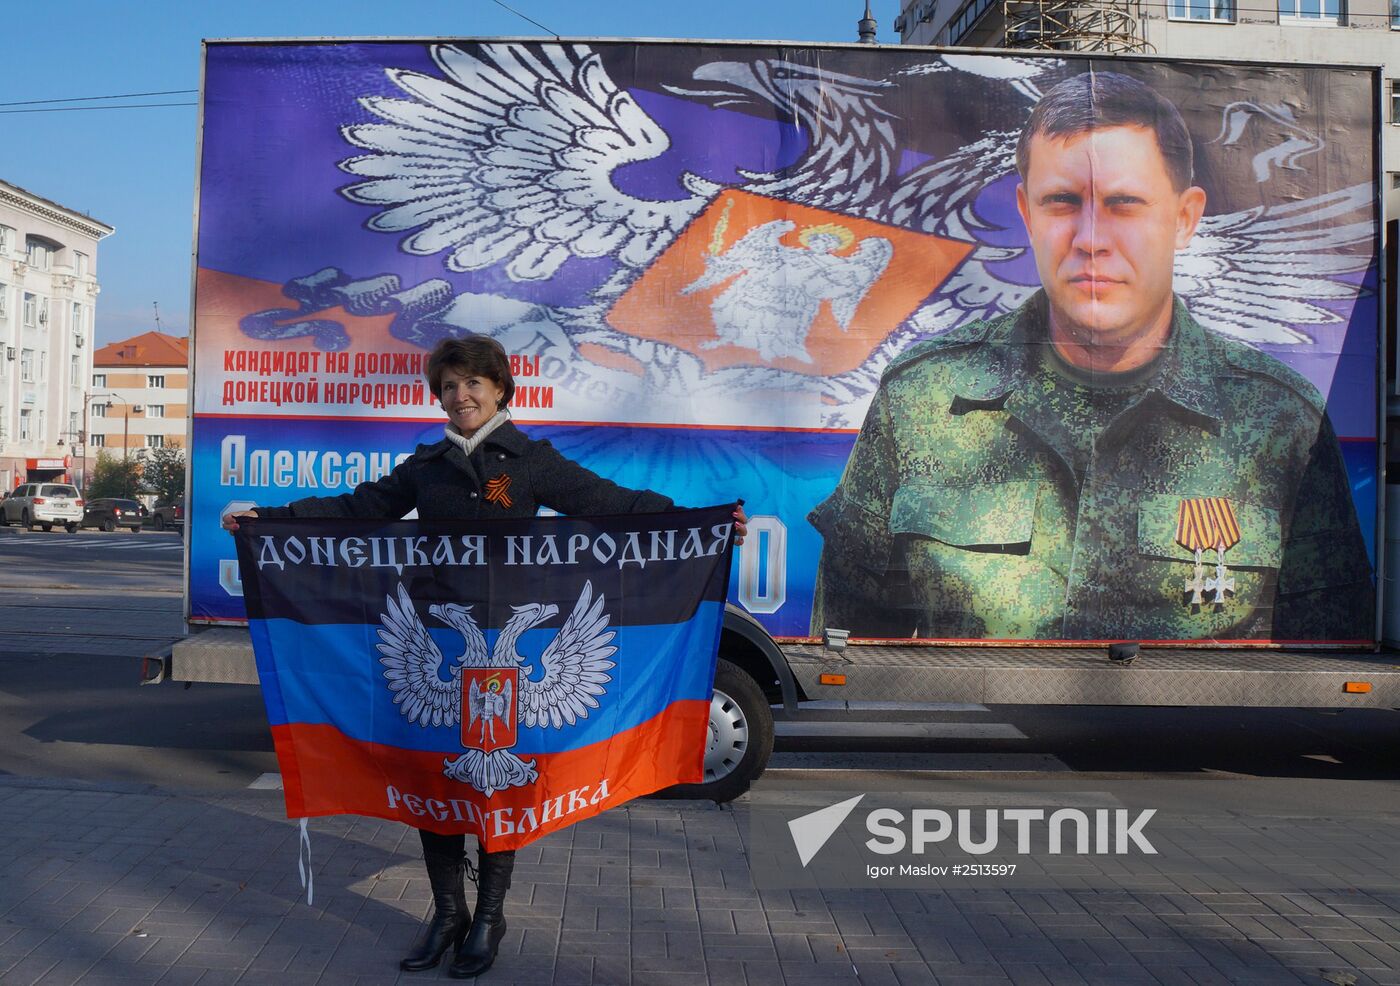 Flag Day in Donetsk